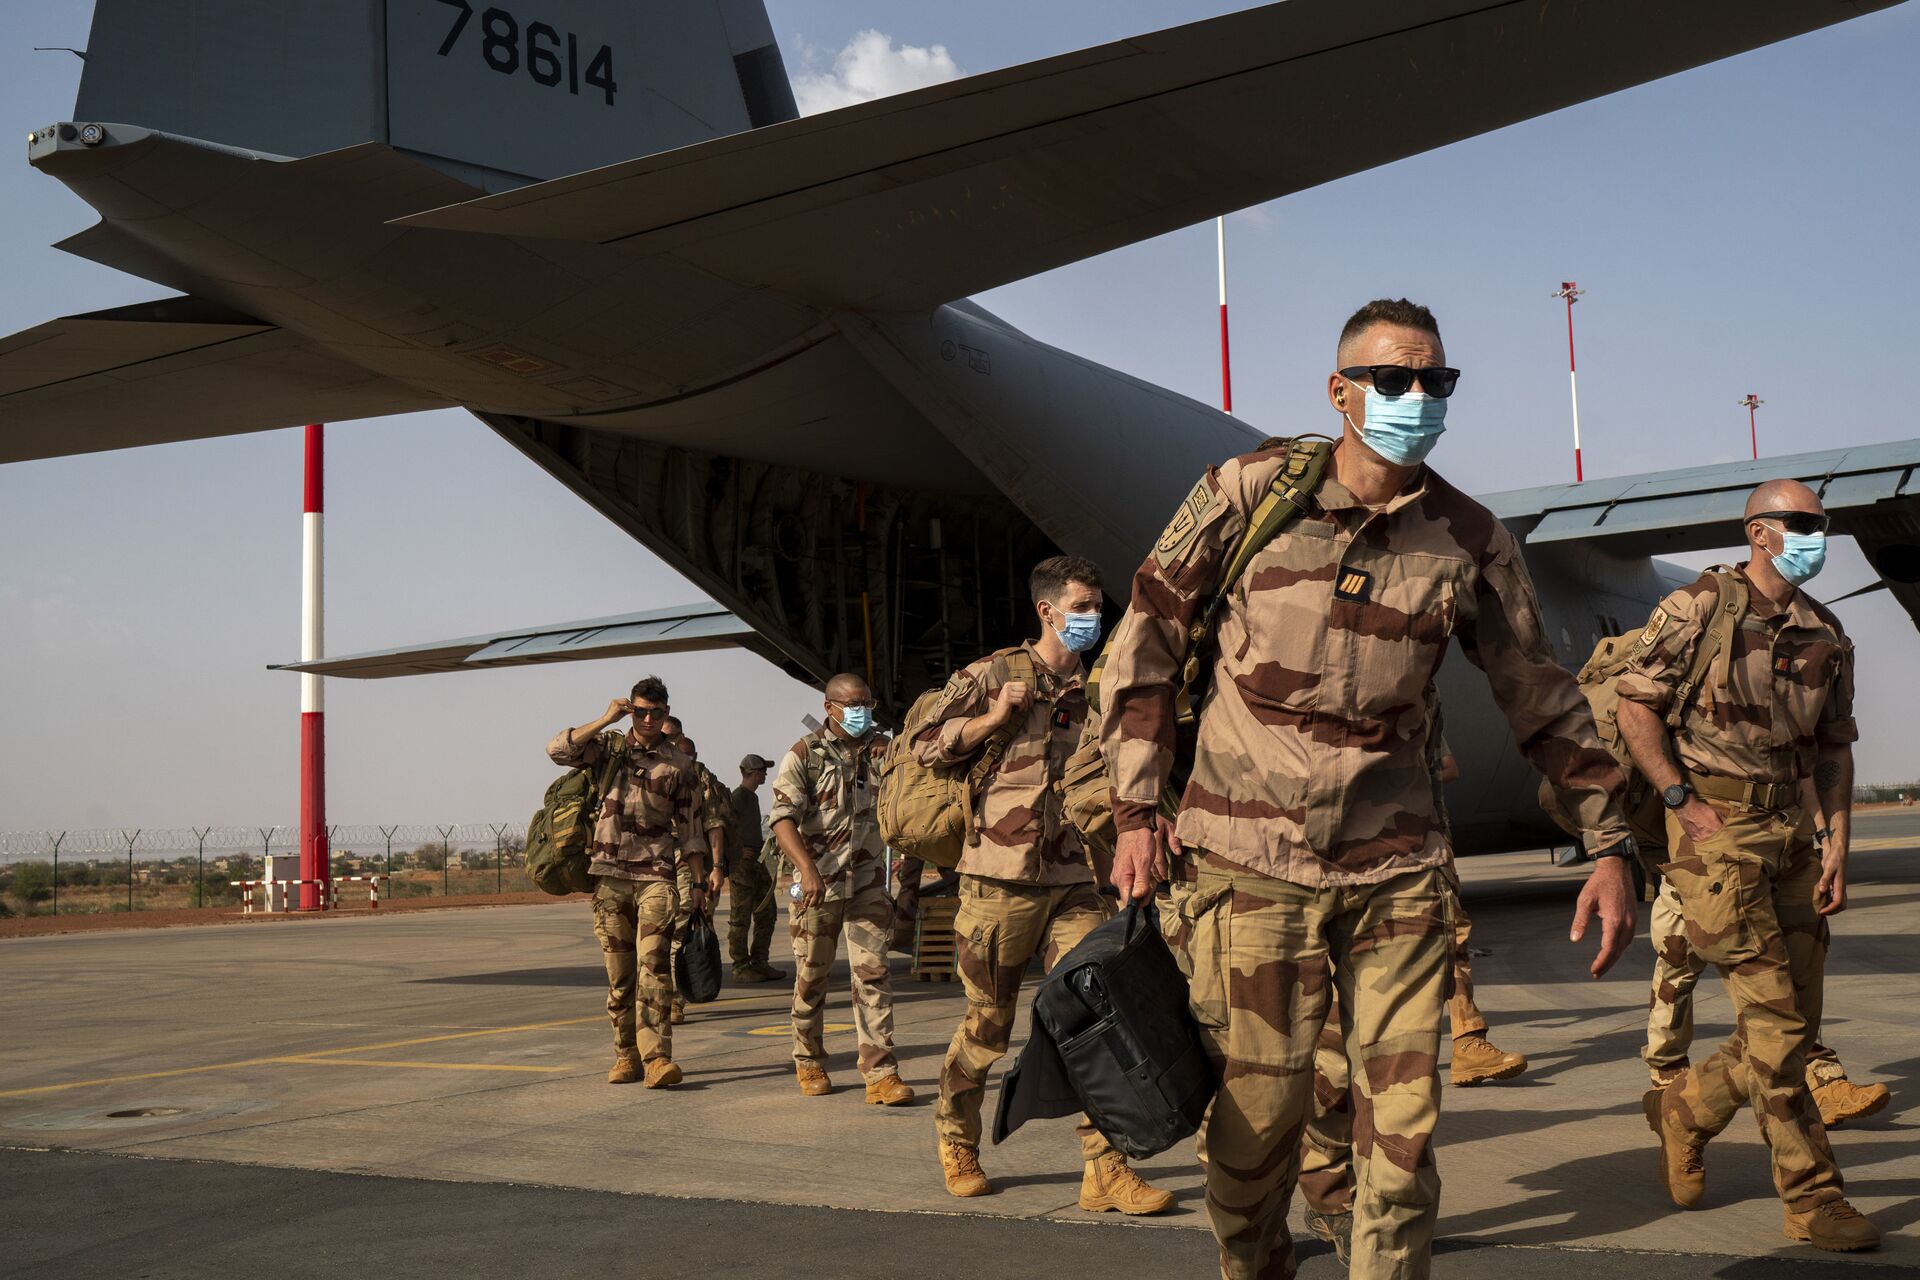 Soldados franceses da operação Barkhane chegando de Gao, Mali, desembarcaram de um avião de carga C130 da Força Aérea dos EUA em Niamey, base do Níger, antes de serem transferidos de volta para suas bases na França, 9 de junho de 2021 - Sputnik Brasil, 1920, 05.05.2022